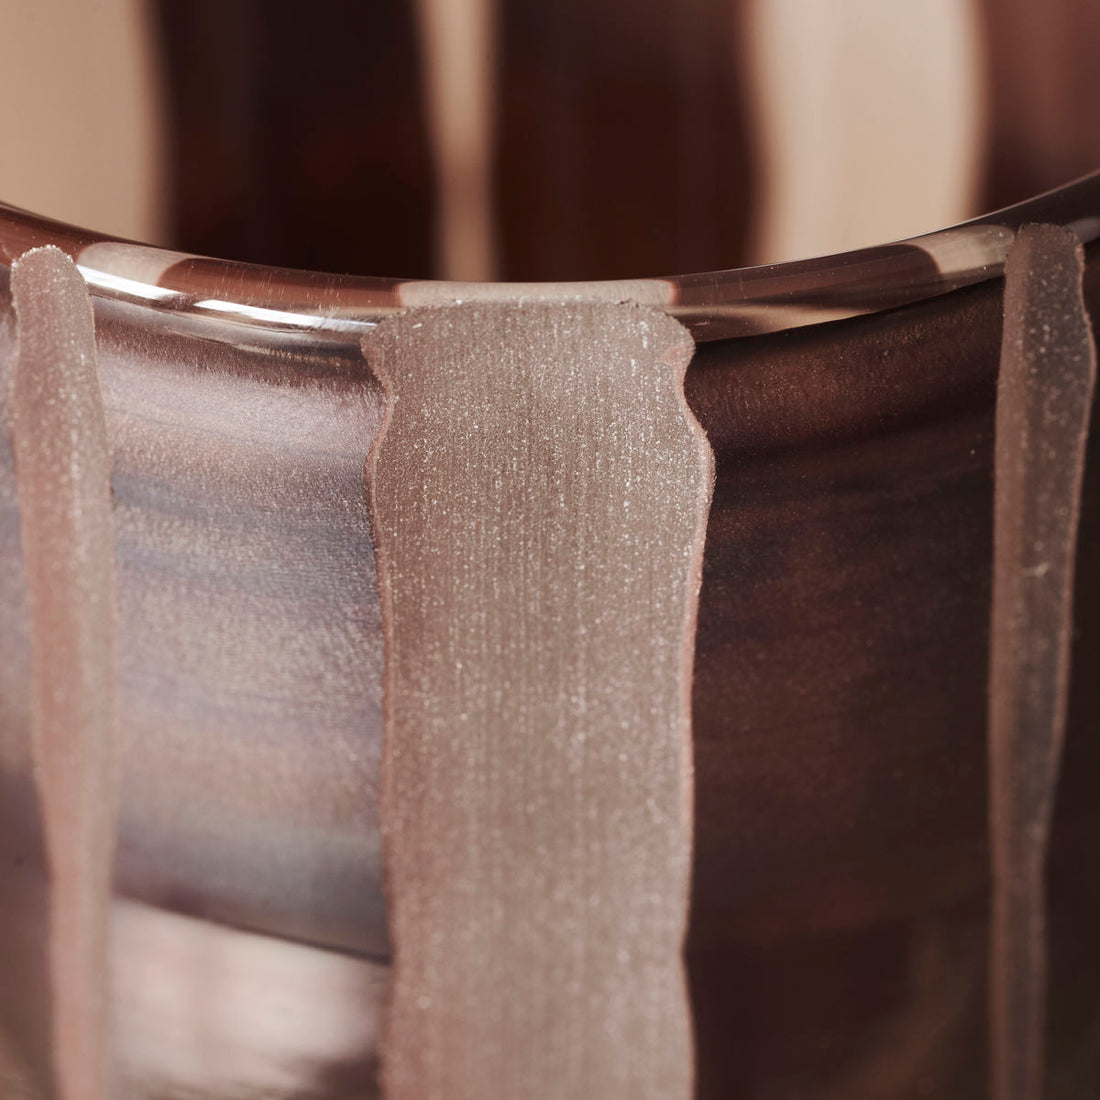 Huslege - Vase, Bai, Brown - H: 15,5 cm, DIA: 8 cm